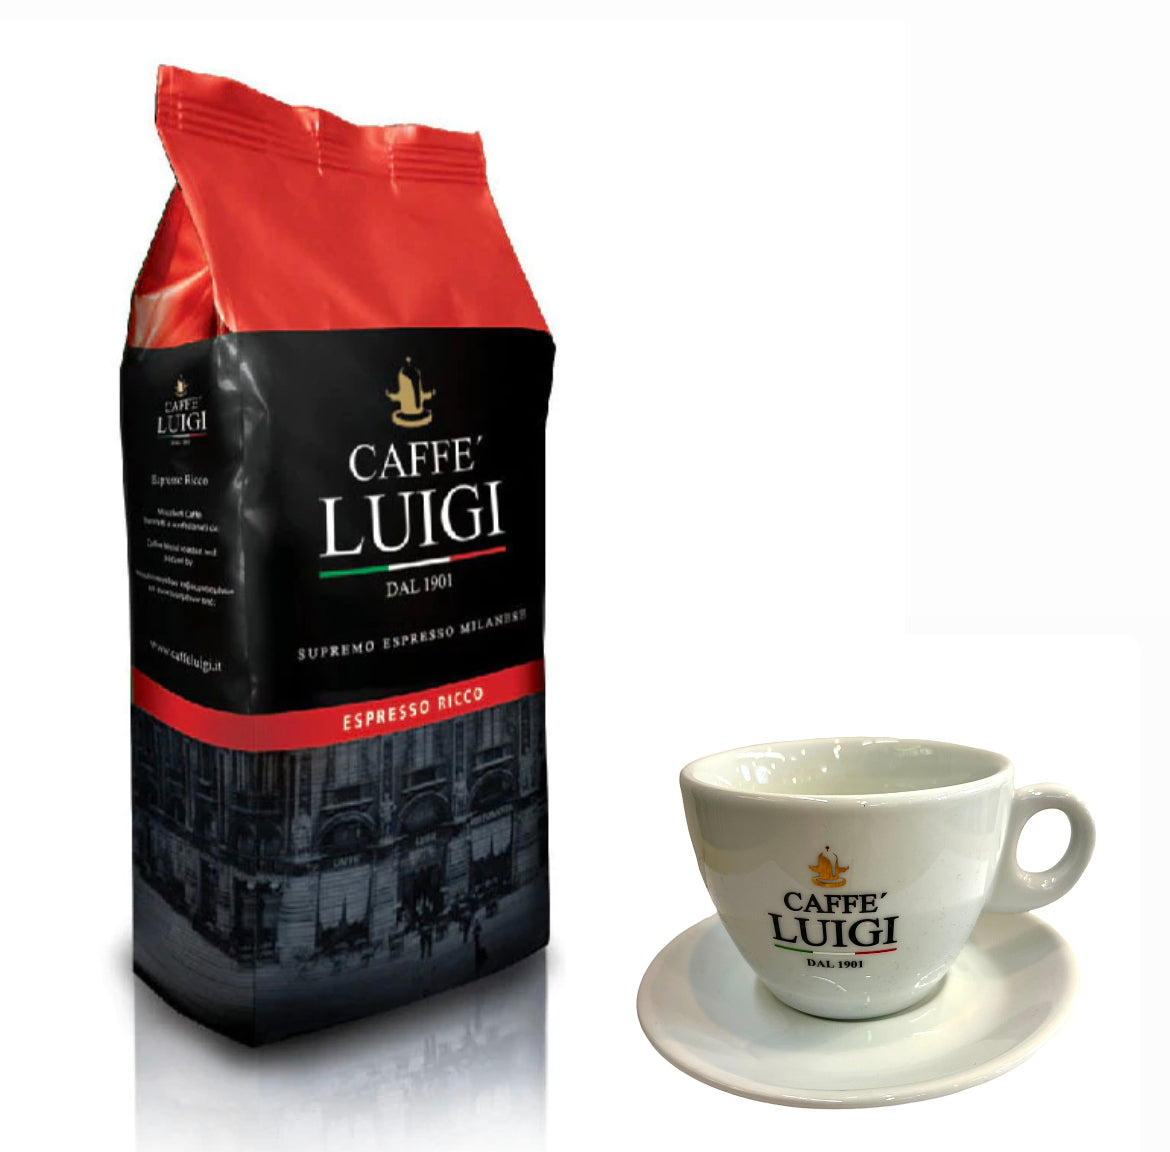 Espresso RICCO Bohnen 1Kg Caffe 'Luigi Ganze Espresso Bohnen Arabica - Robusta + 1 Cappuccino Tasse Doppelt